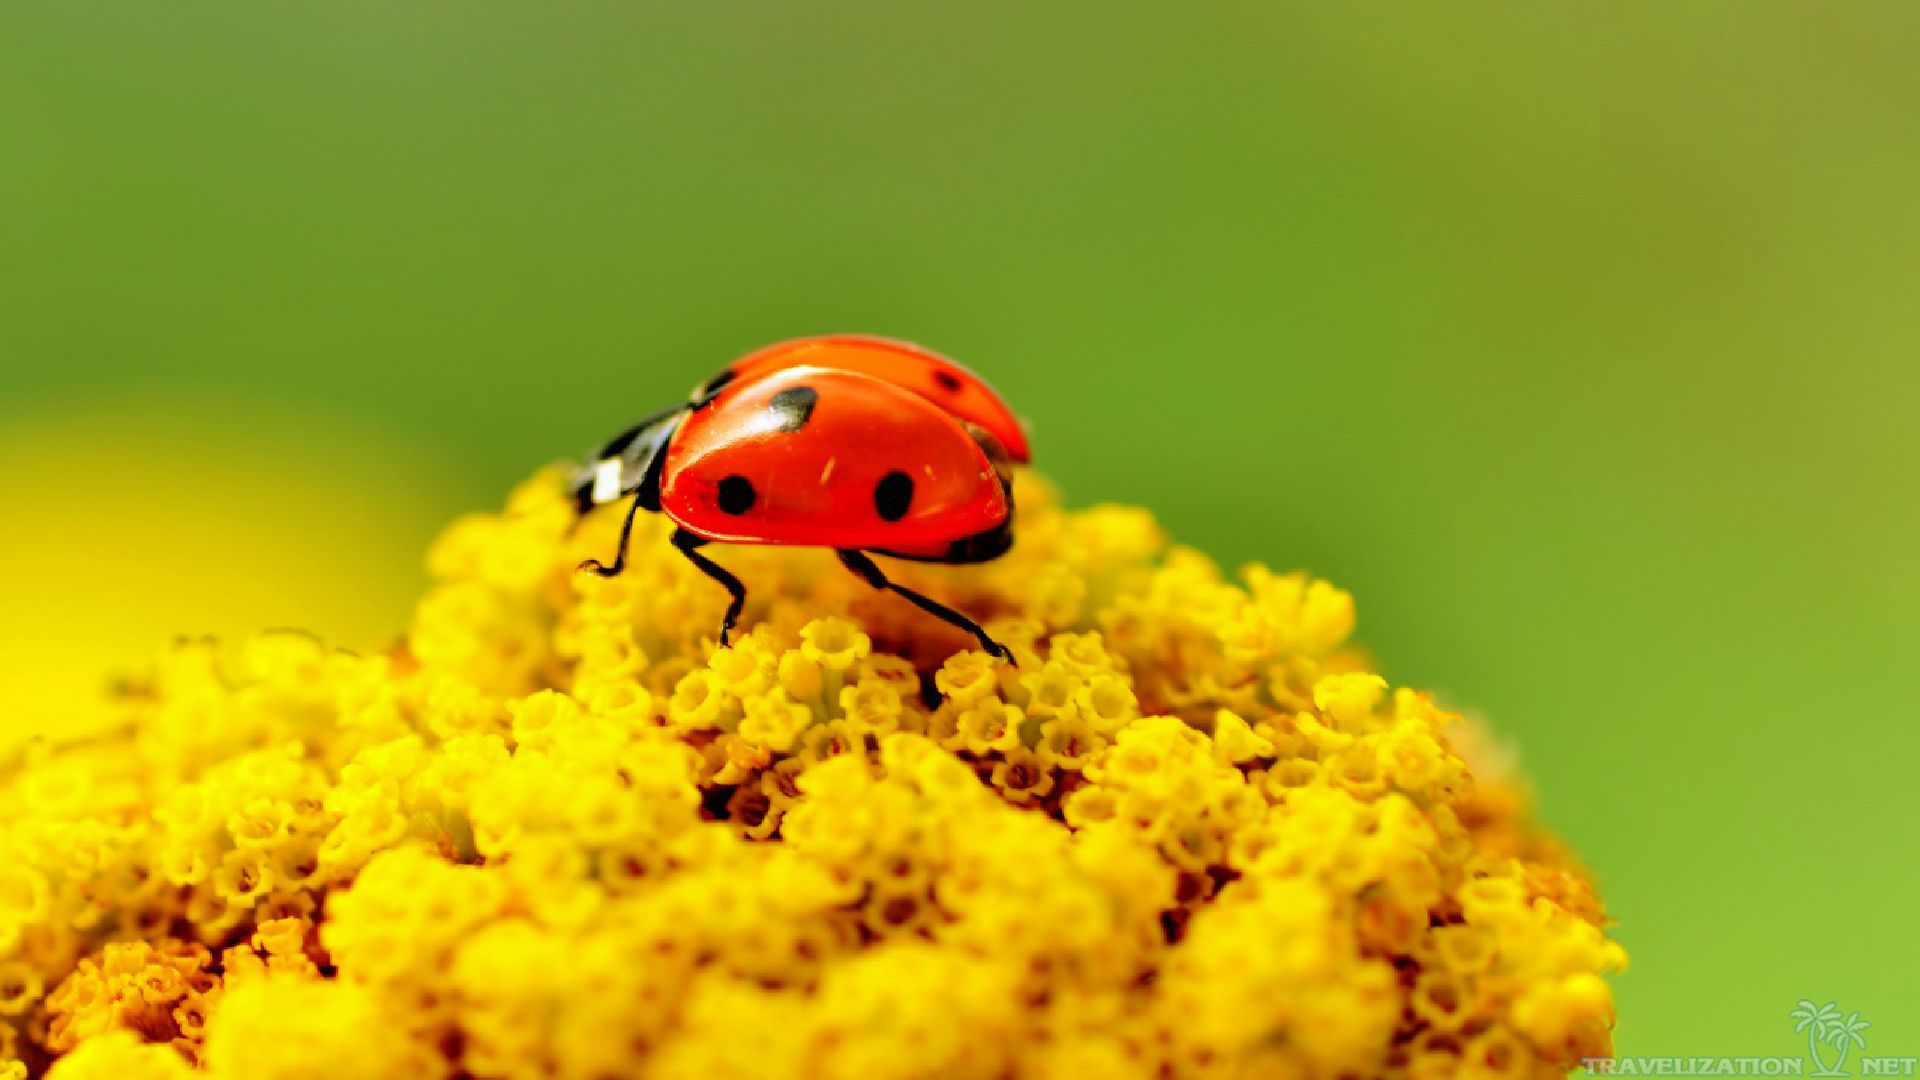 Download Cute Ladybug Wallpaper - WallpaperSafari